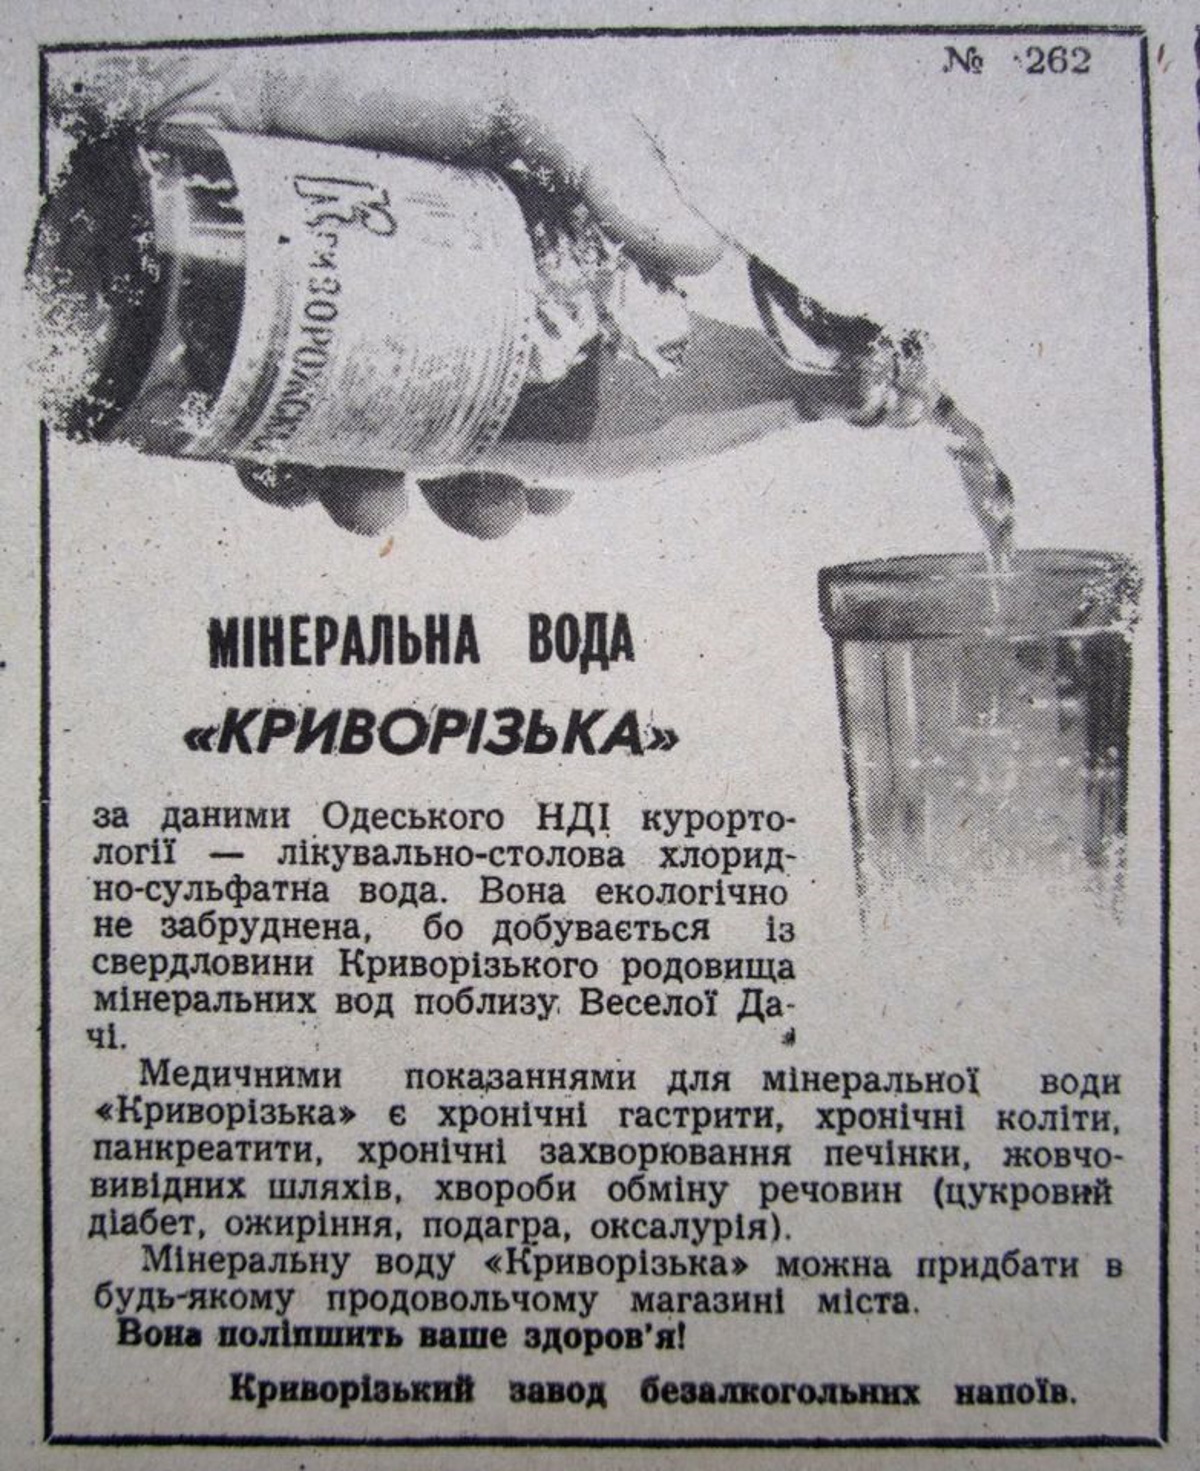 Реклама в газете минеральной воды "Криворожская"